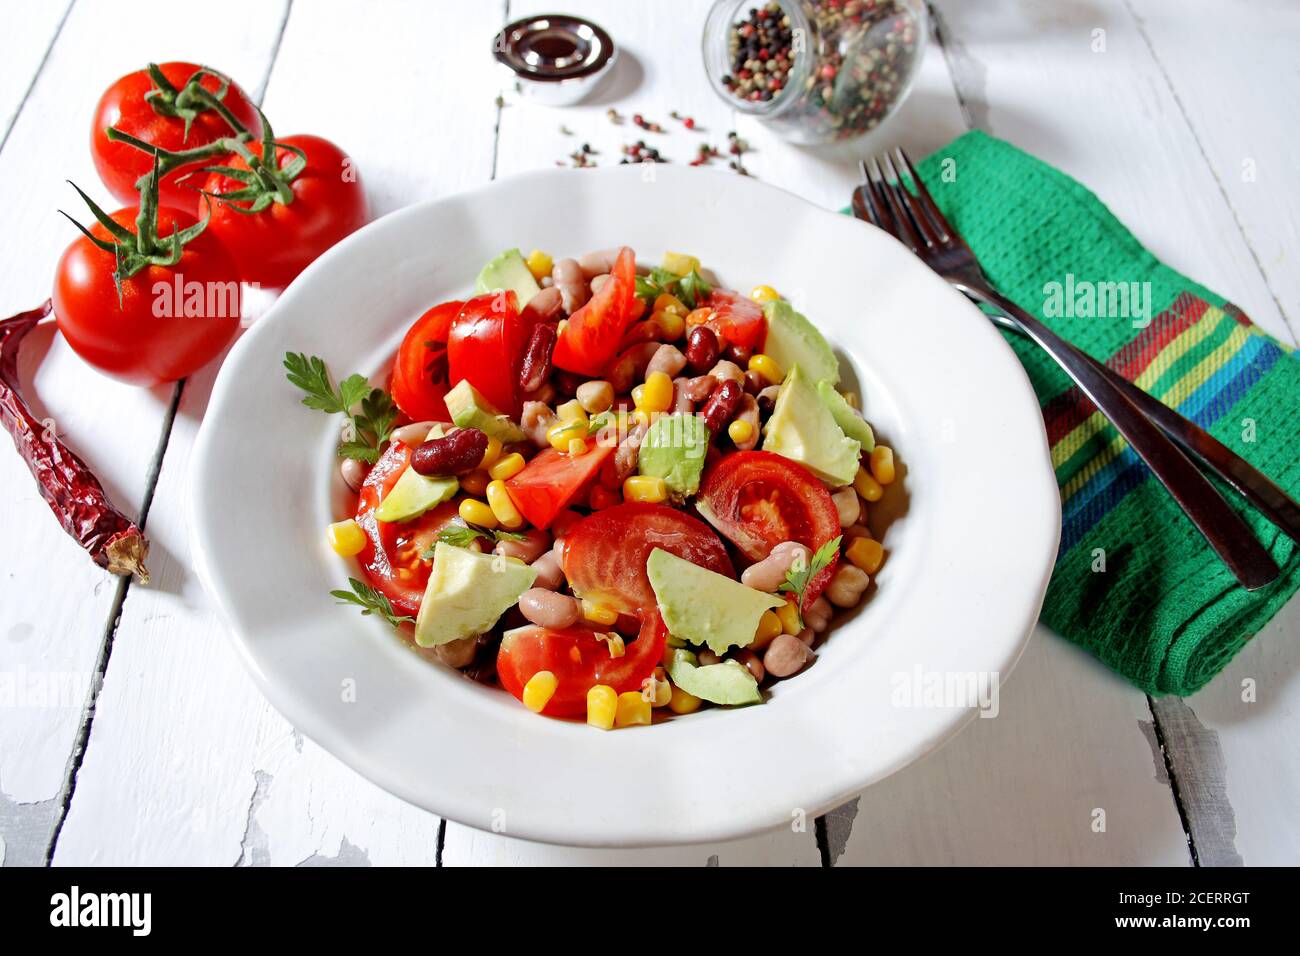 Insalata di verdure in stile messicano con fagioli, avocado, pomodori, mais e ceci Foto Stock